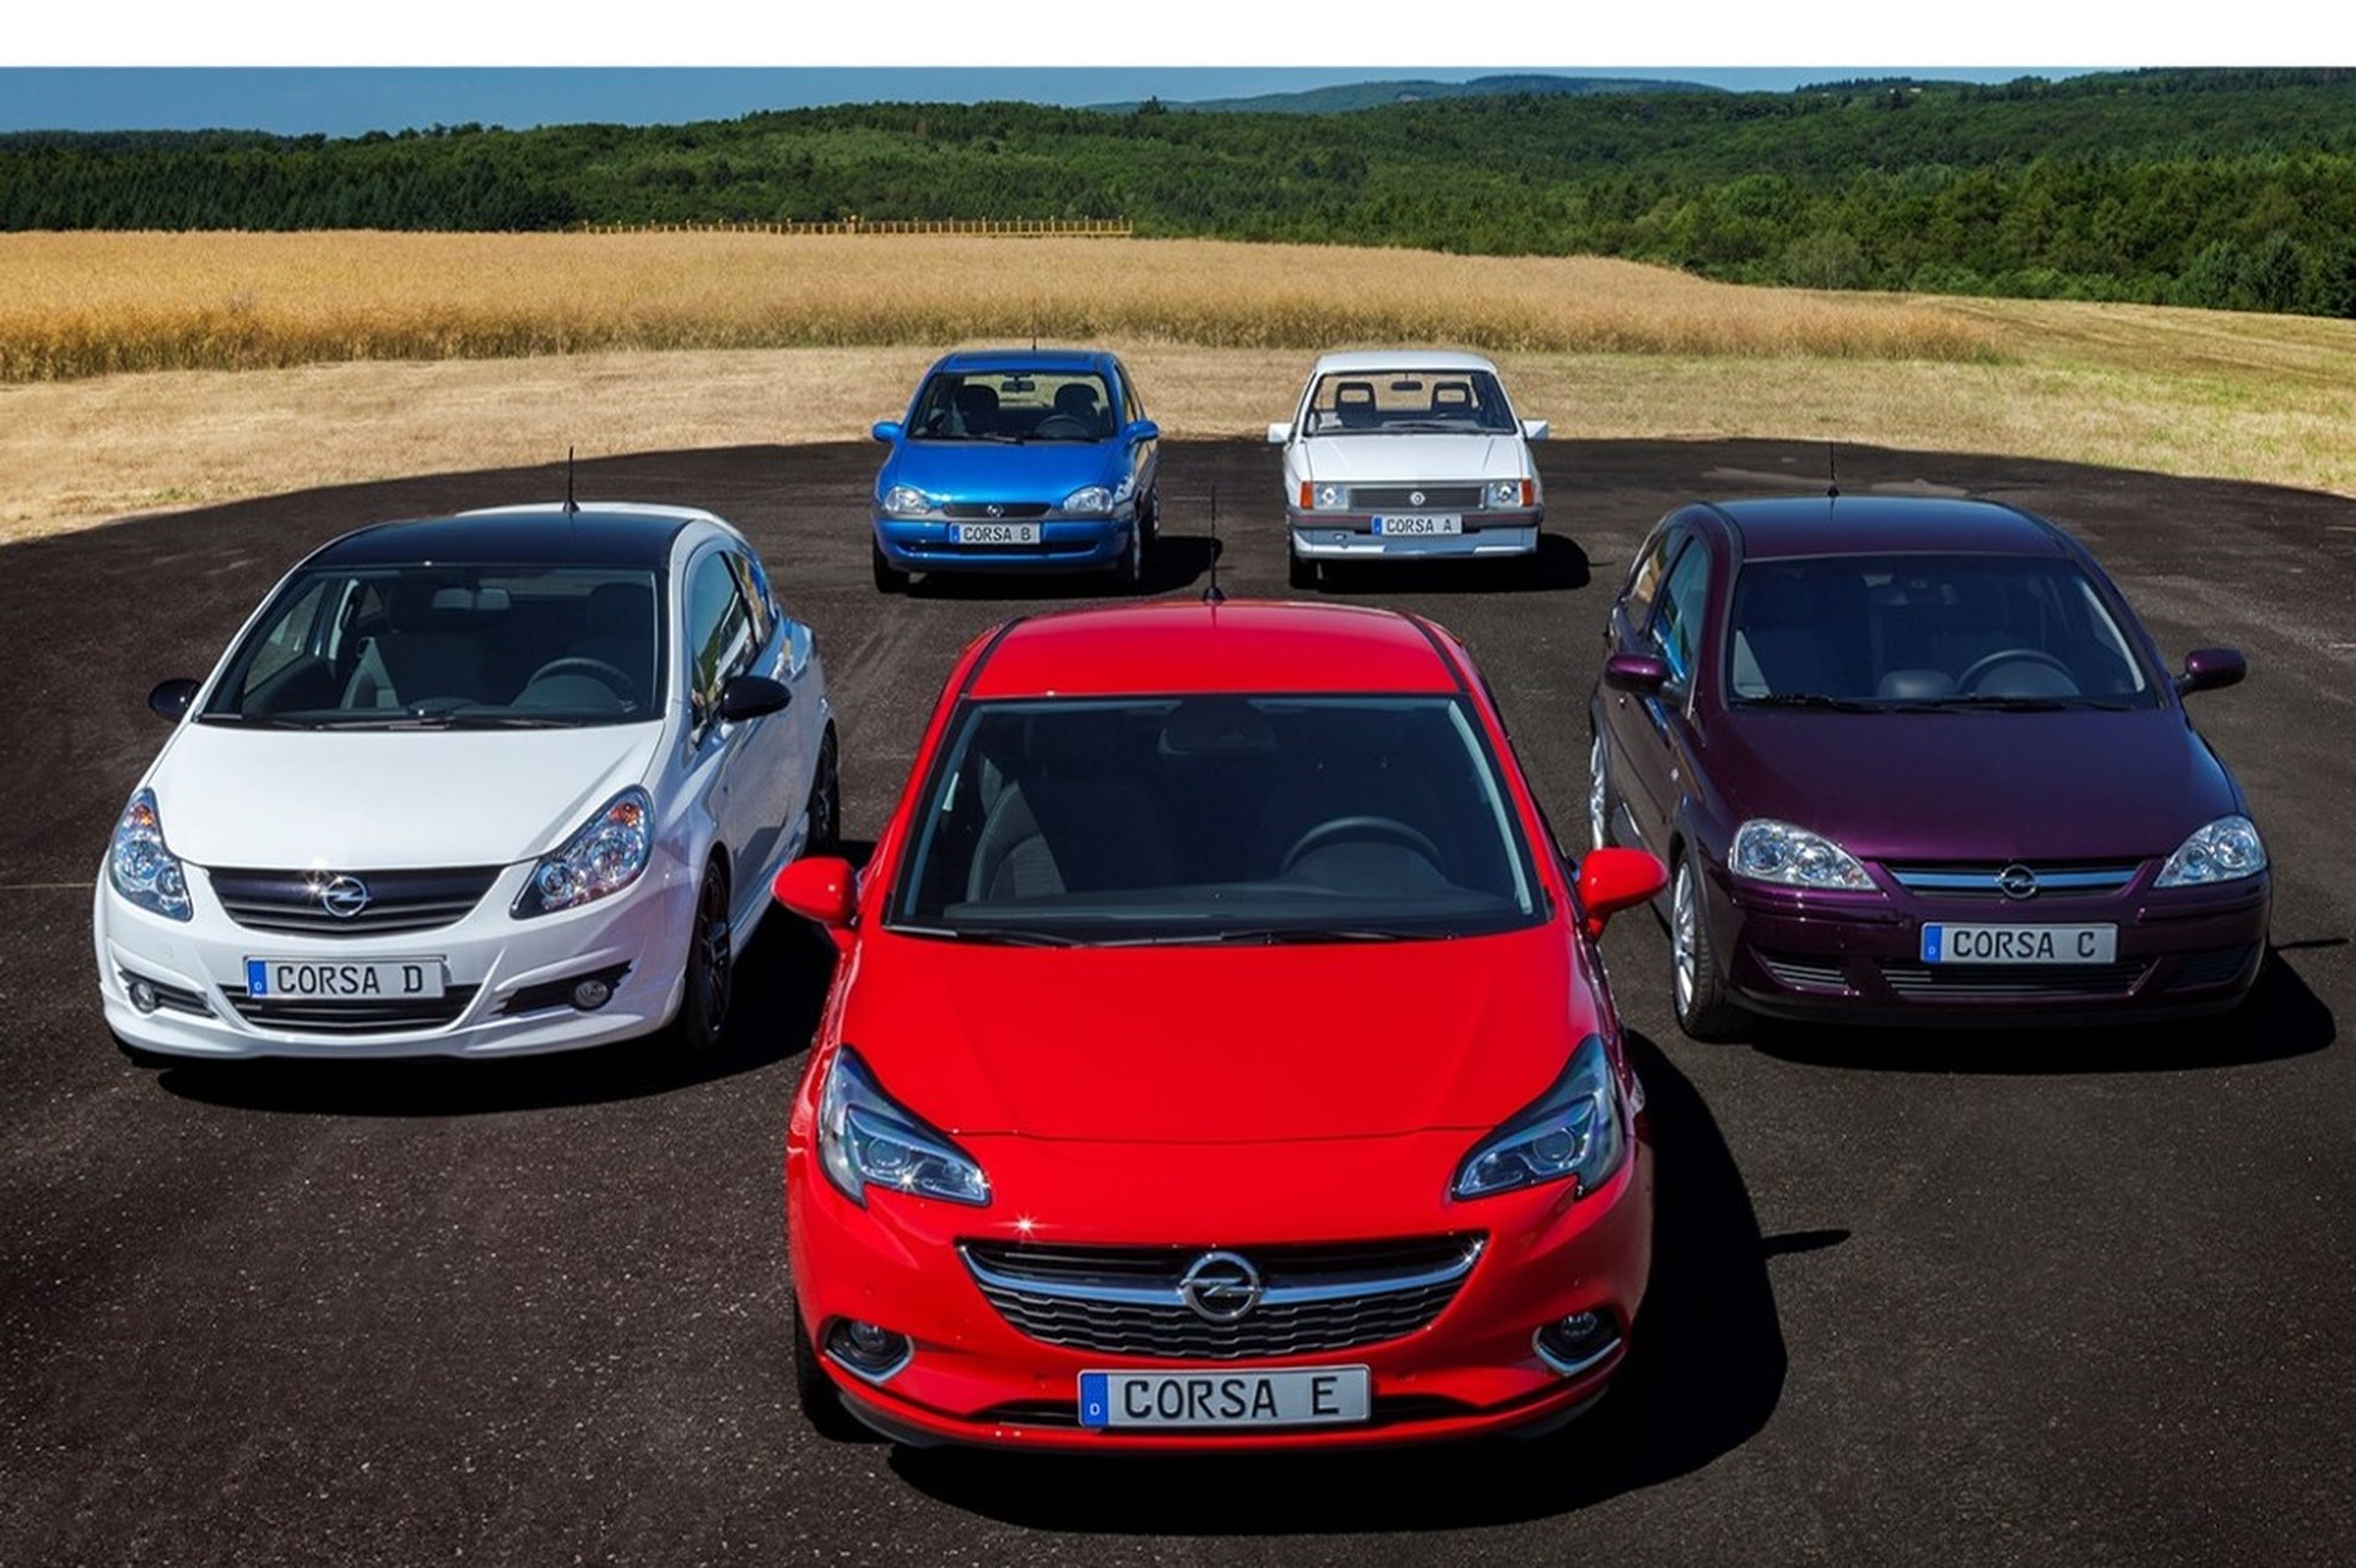 5 frikadas del Opel Corsa que pocos conocen